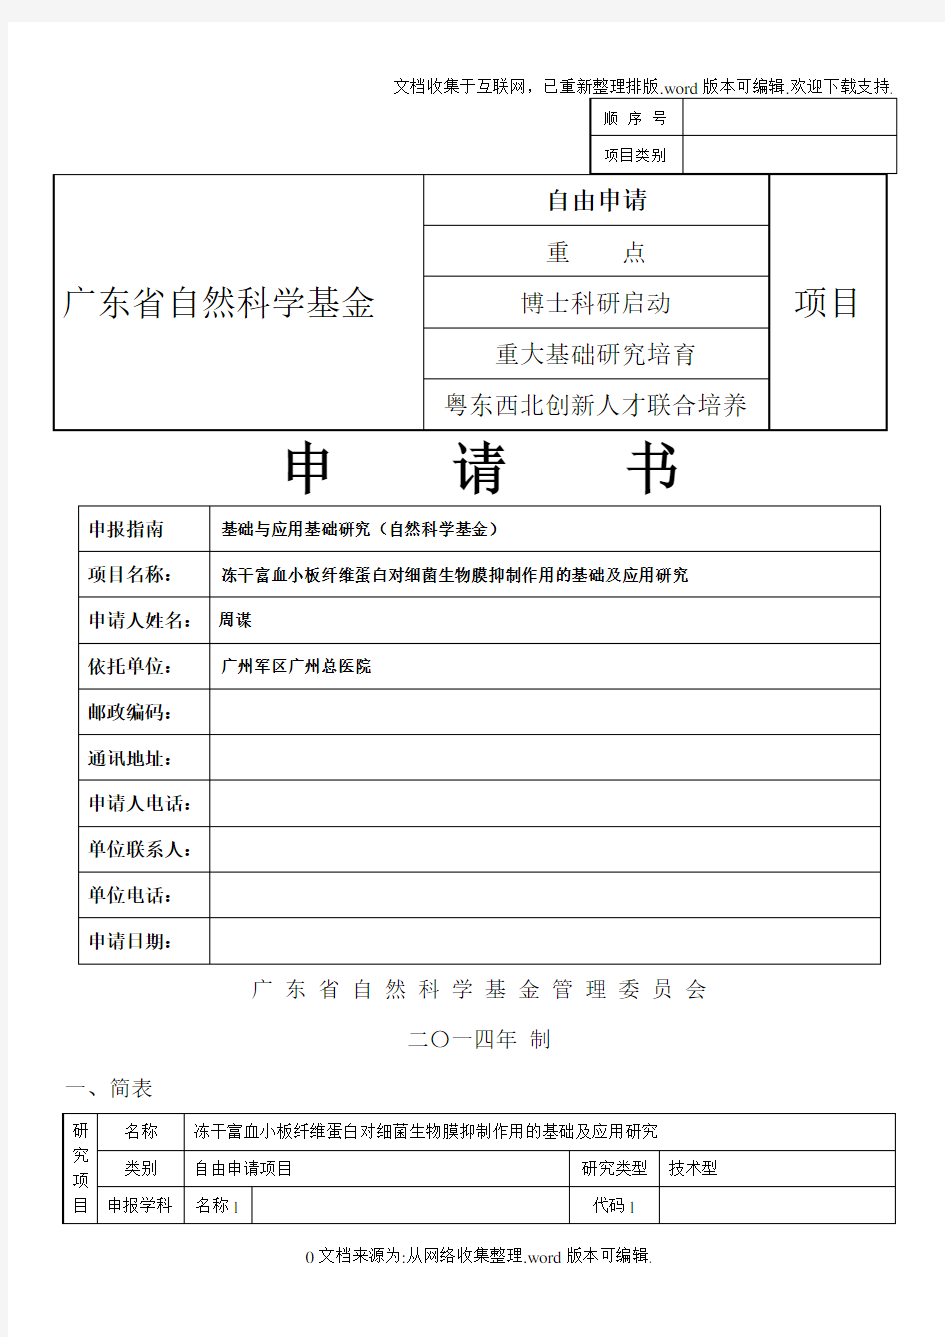 2020年广东省自然科学基金申请书样本